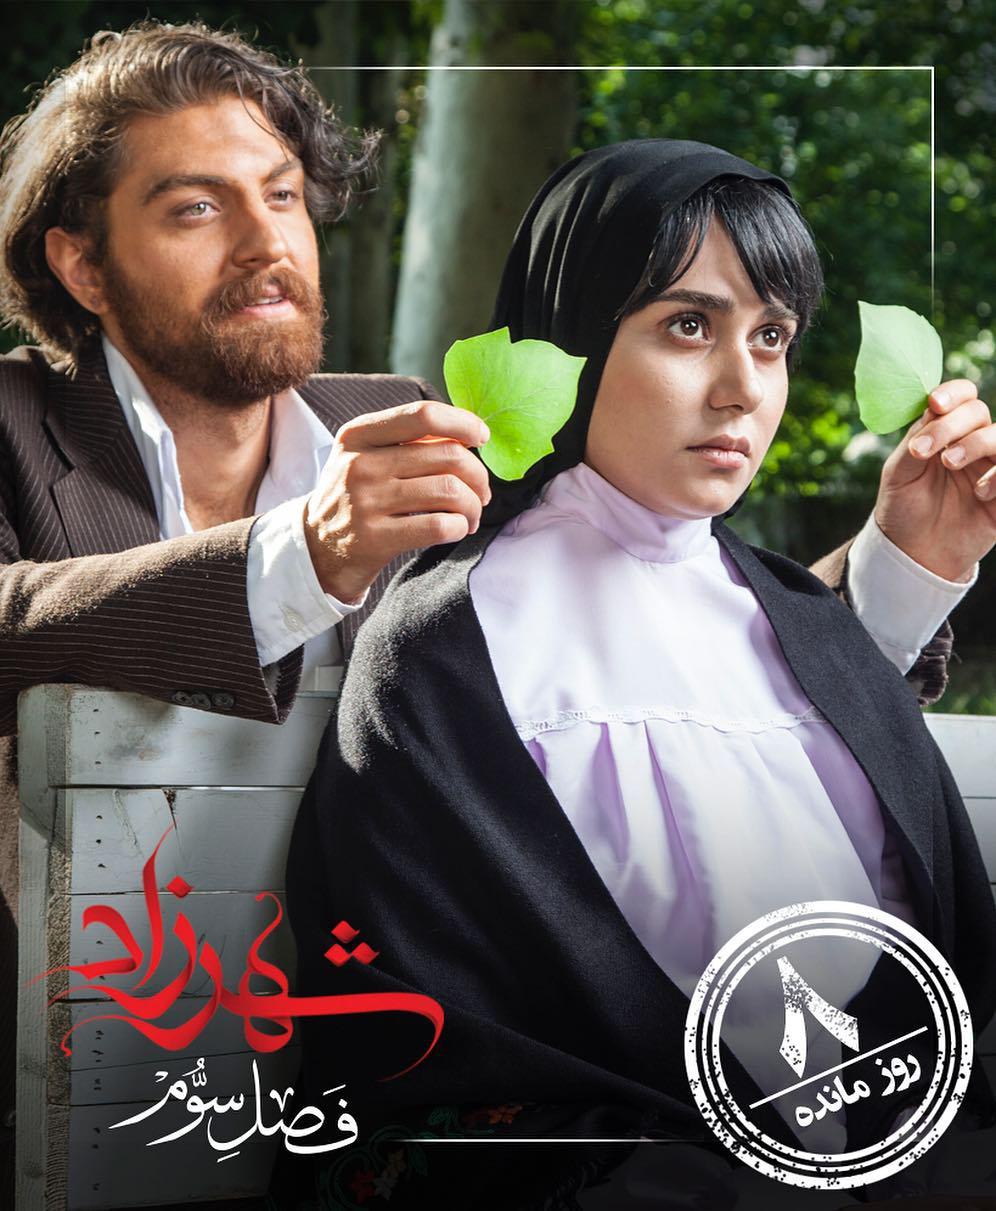 پوستر سریال تلویزیونی شهرزاد 3 با حضور پریناز ایزدیار و امیرحسین فتحی